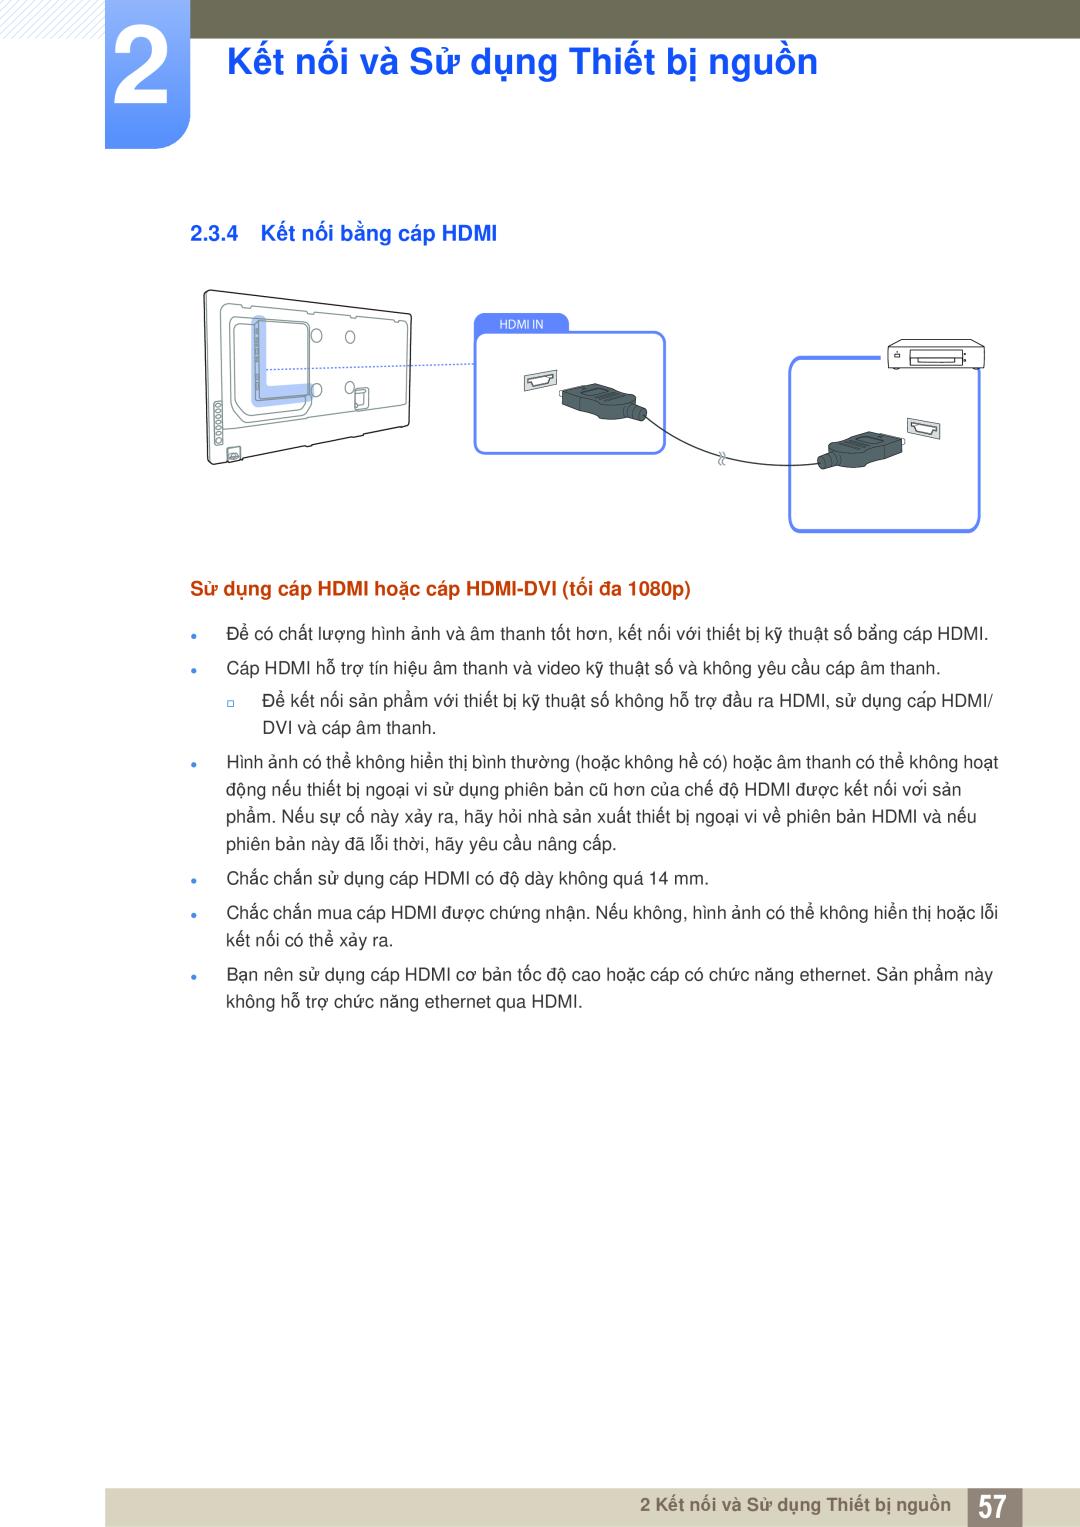 Samsung LH46MEPLGC/XY, LH46DEPLGC/EN, LH55MEPLGC/XY manual 2.3.4 Kết nối bằng cáp HDMI, 2 Kết nối và Sử dụng Thiết bị nguồn 